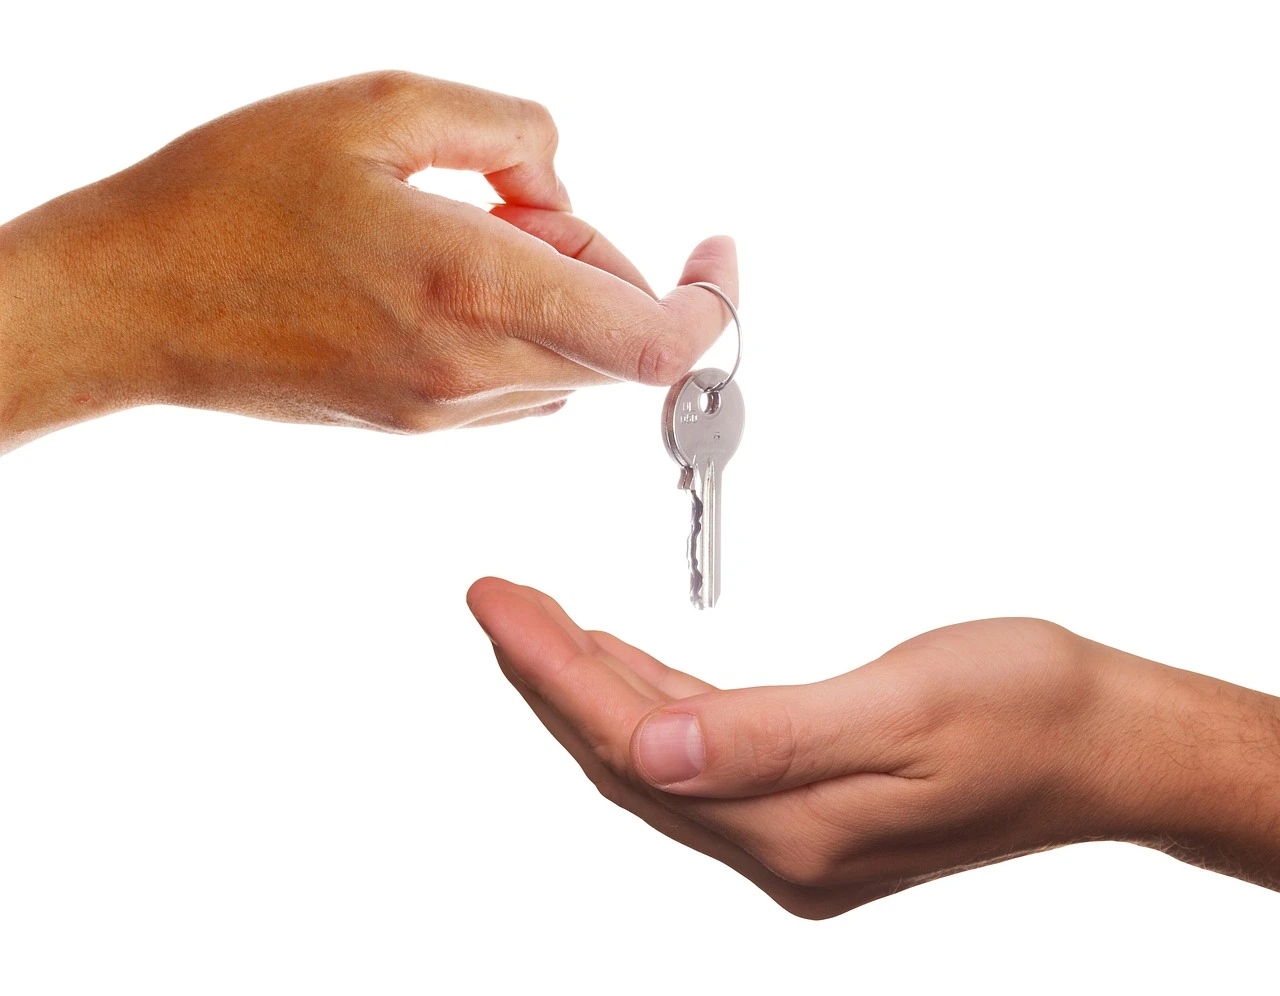 Una mano entregando unas llaves a otra mano que la está recibiendo.